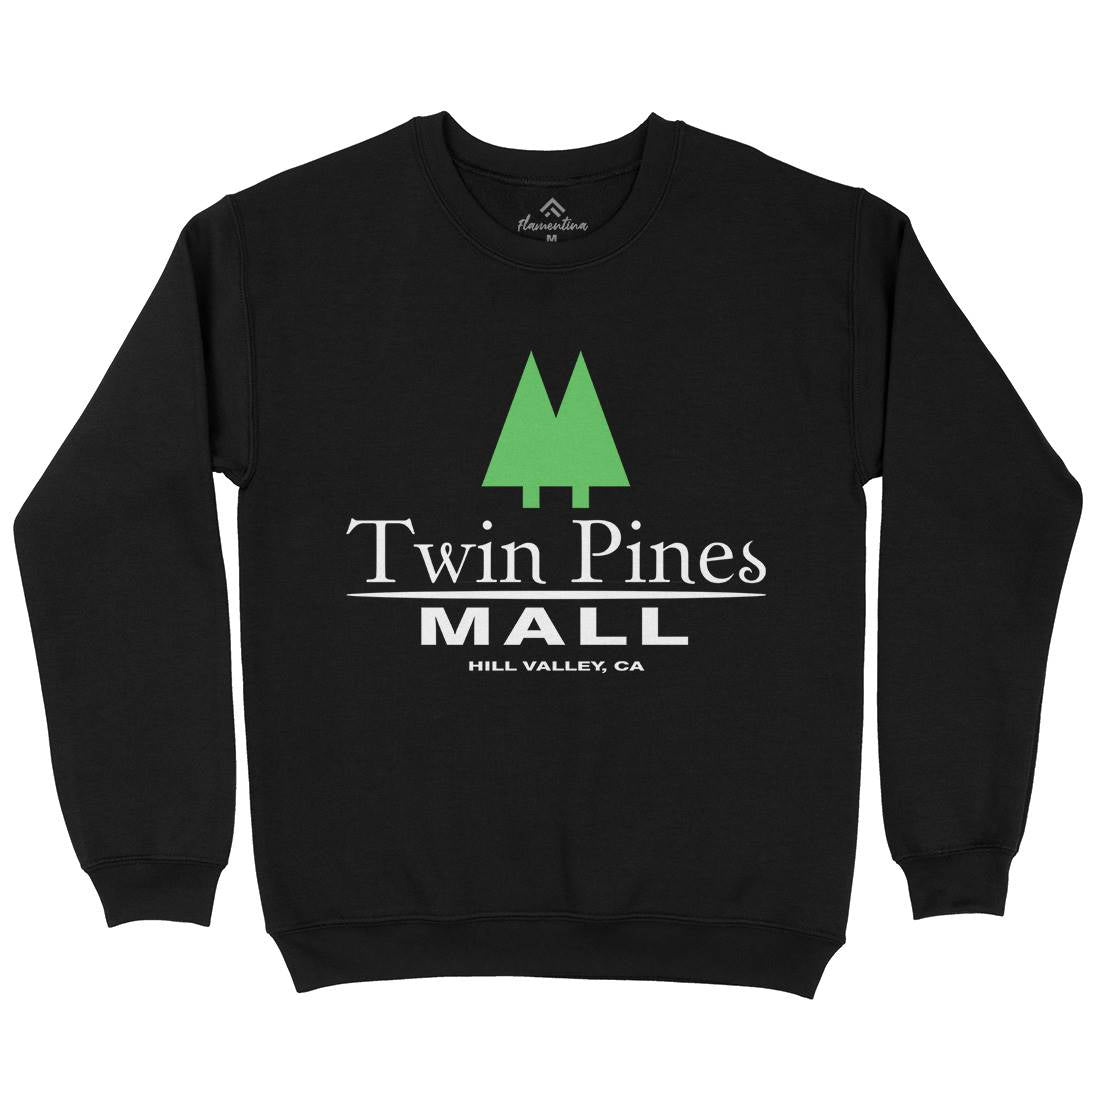 Twin Pines Mall Kids Crew Neck Sweatshirt Space D311